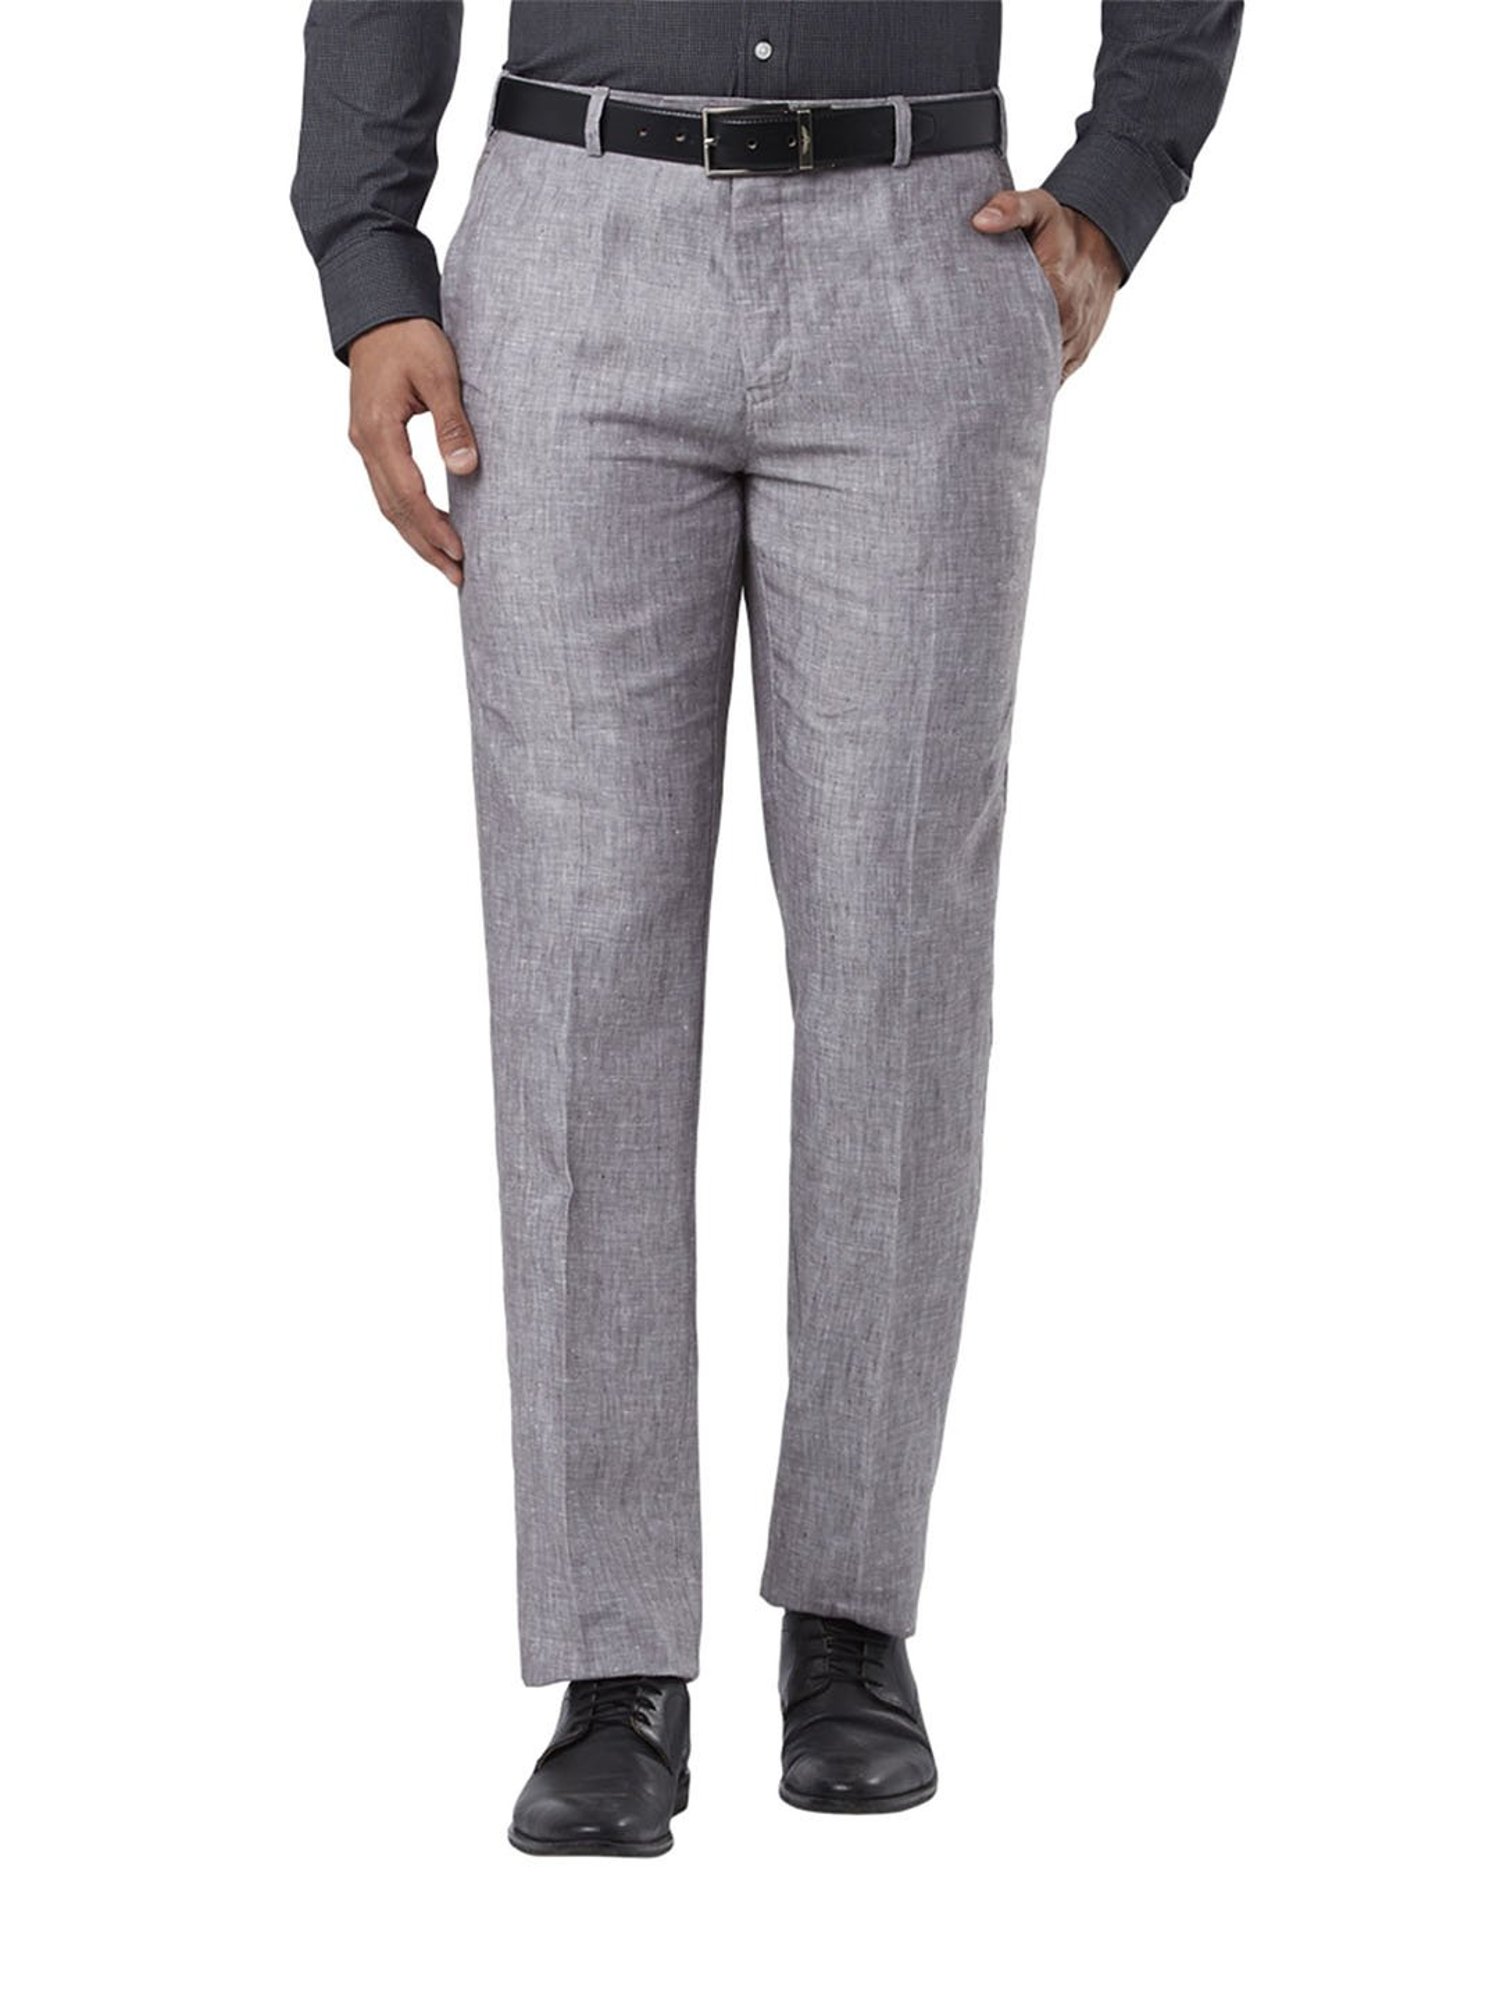 Grey linen trousers by Dhatu Design Studio  The Secret Label